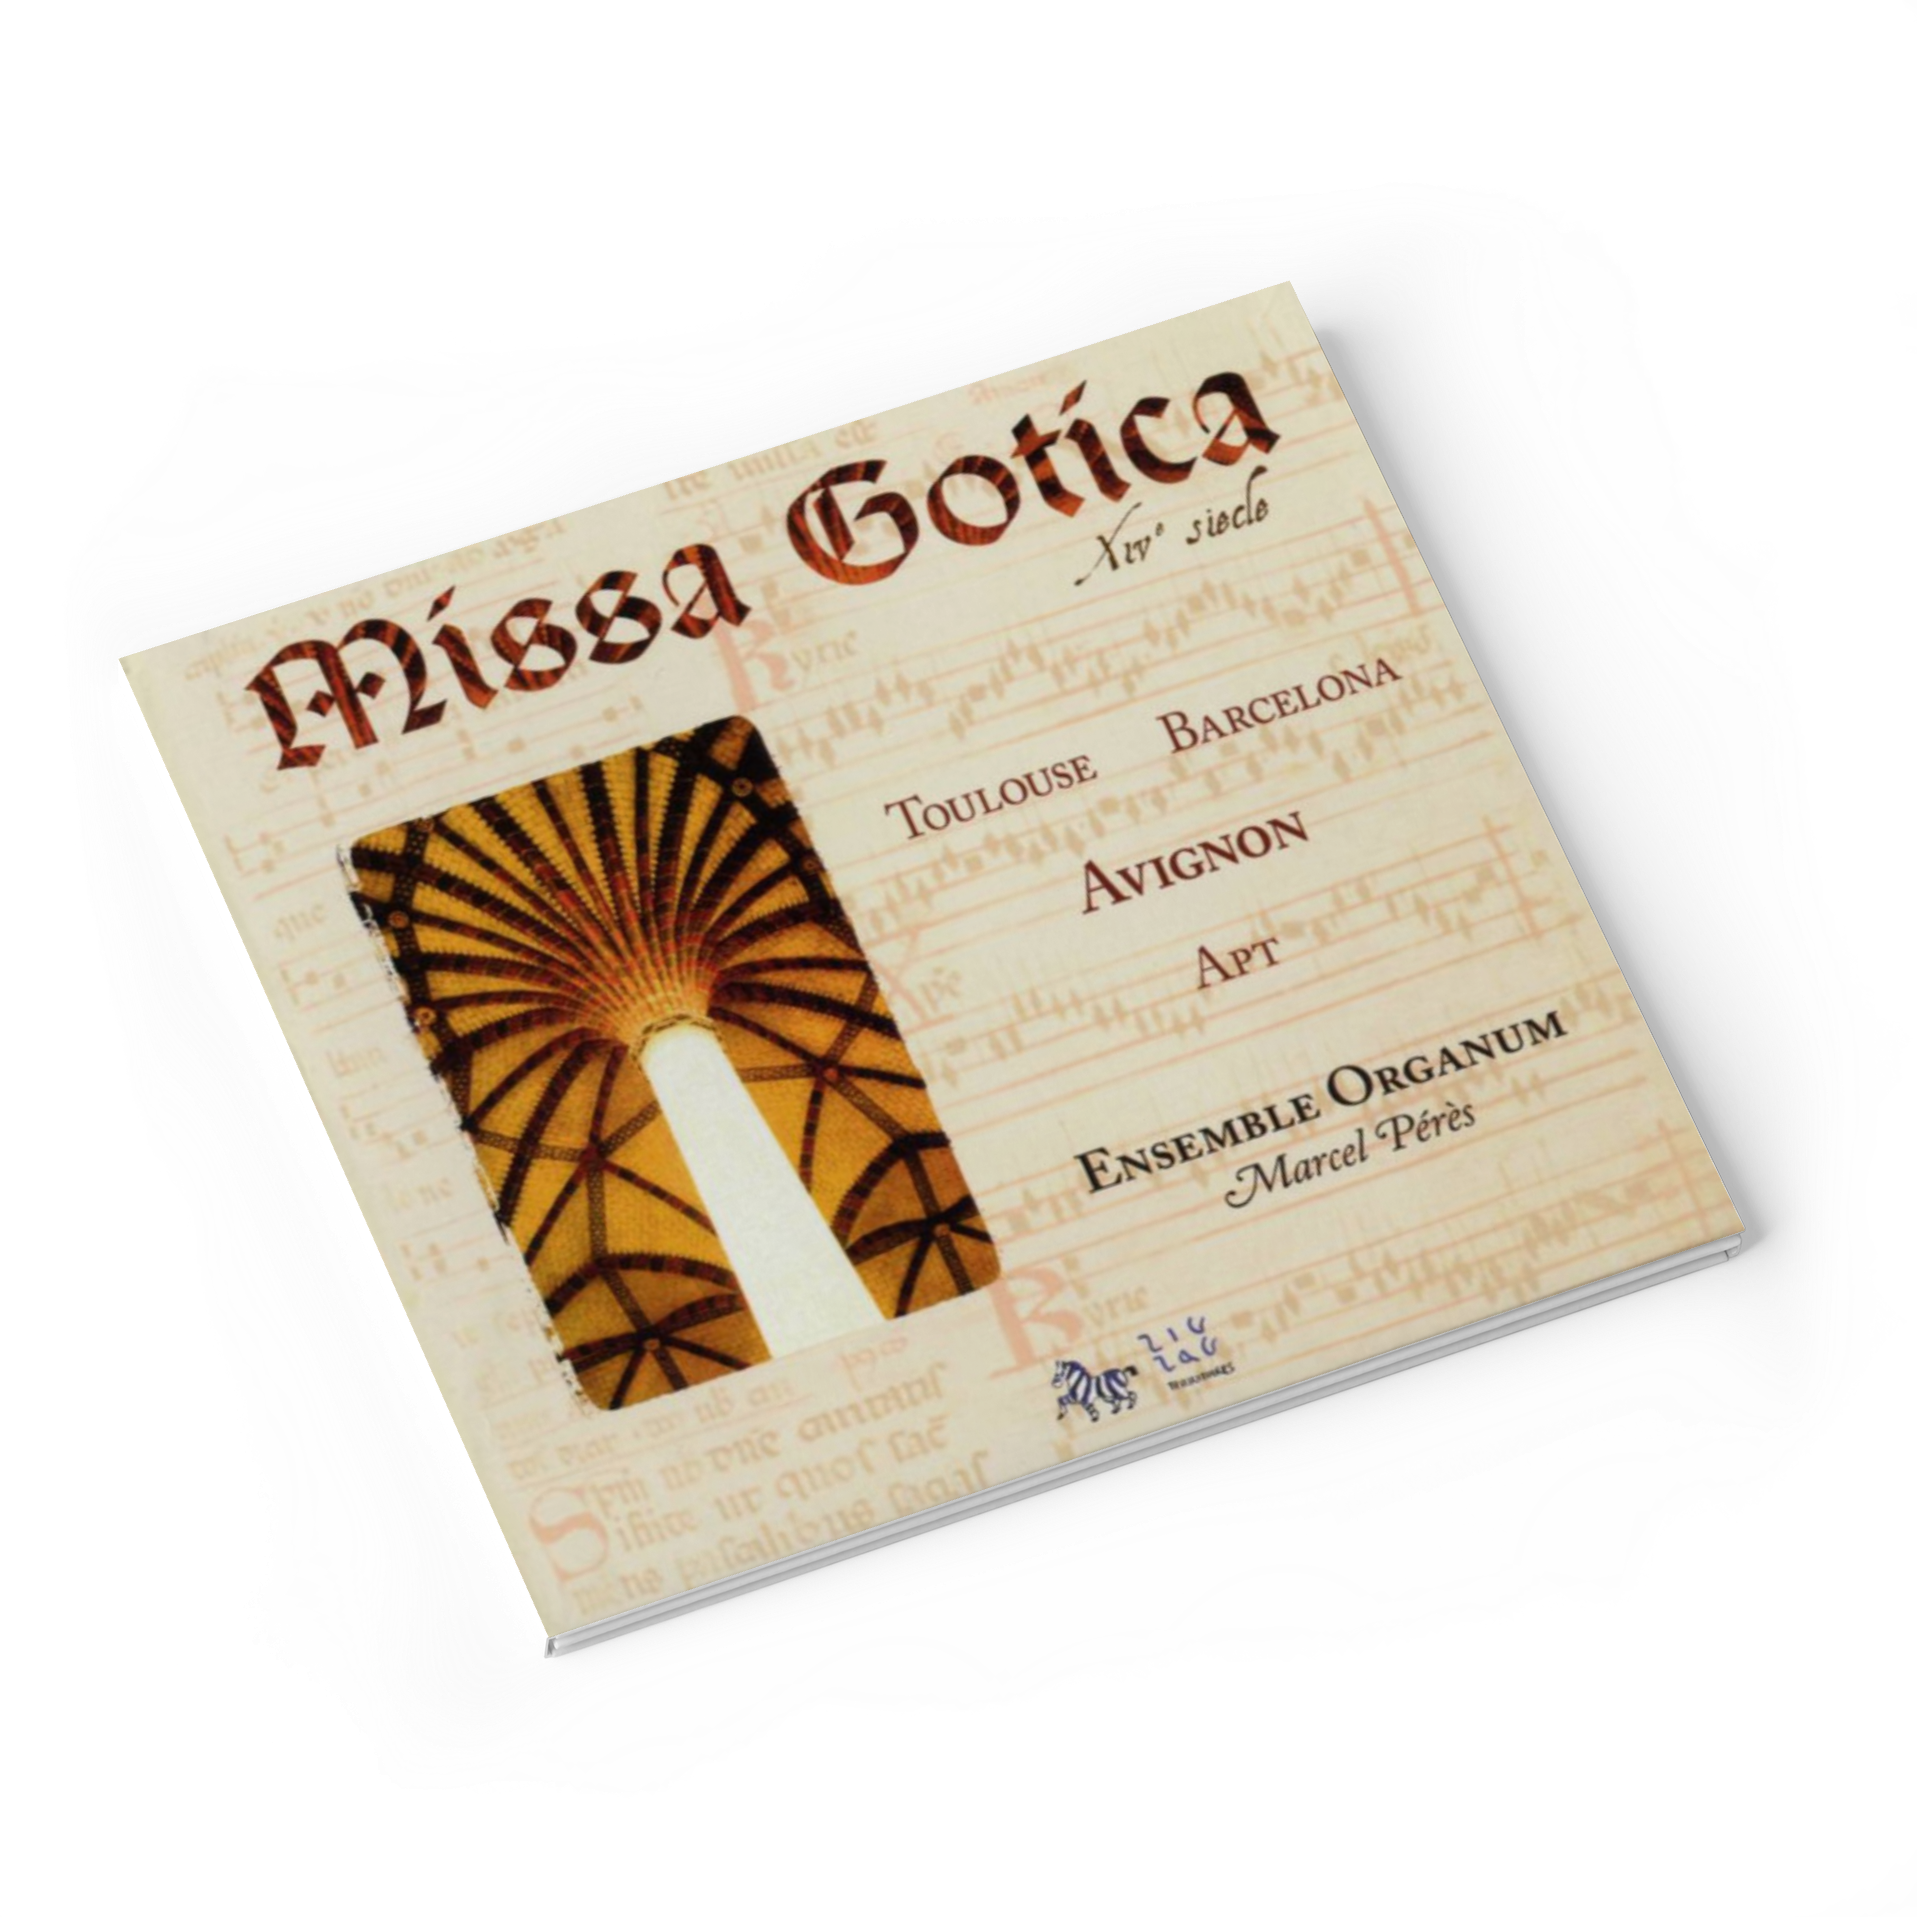 okładka płyty Missa gotica zespołu ensemble organum